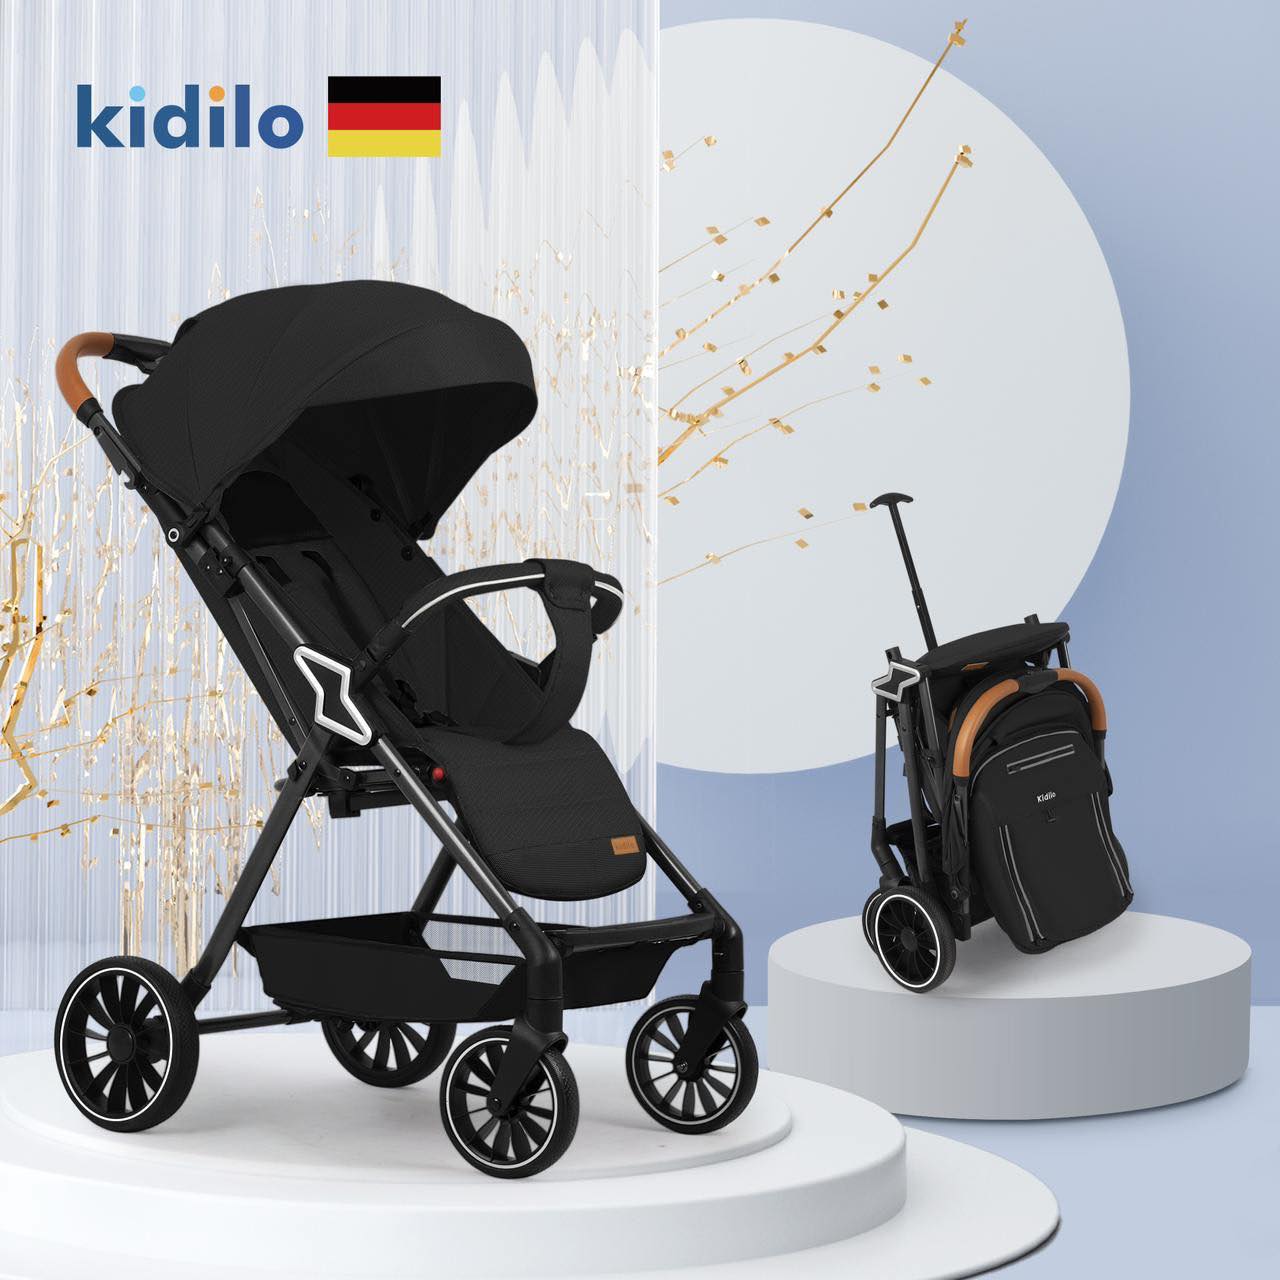 Baby stroller model Kidilo Z2